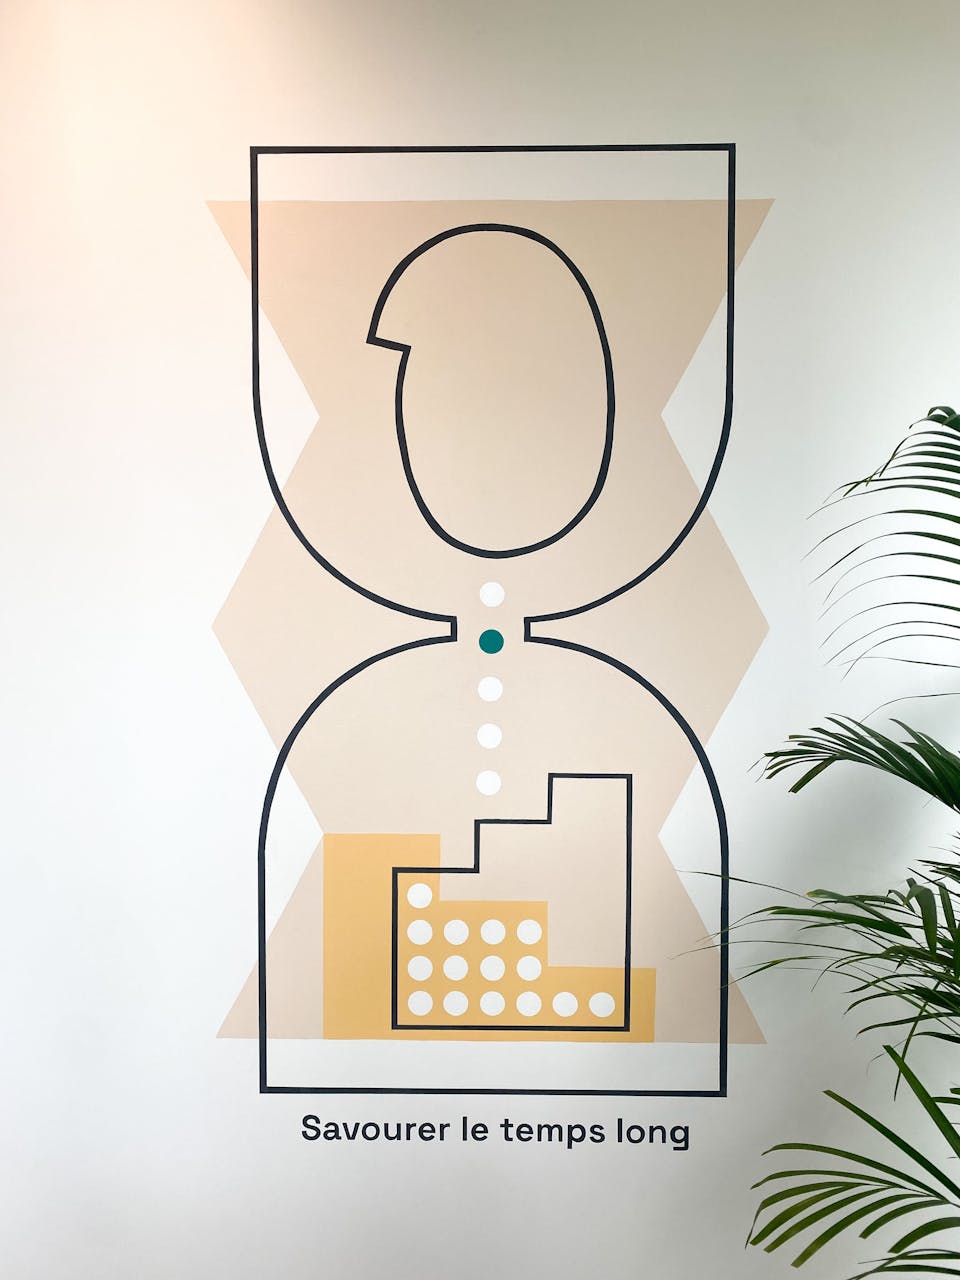 Une illustration filaire symbolisant un sablier et le temps qui s'y écoule, apposée par sticker dans le cadre de l'aménagement de la Maison de l'Entreprise à Saint-Nazaire par l'agence de design Studio Katra.